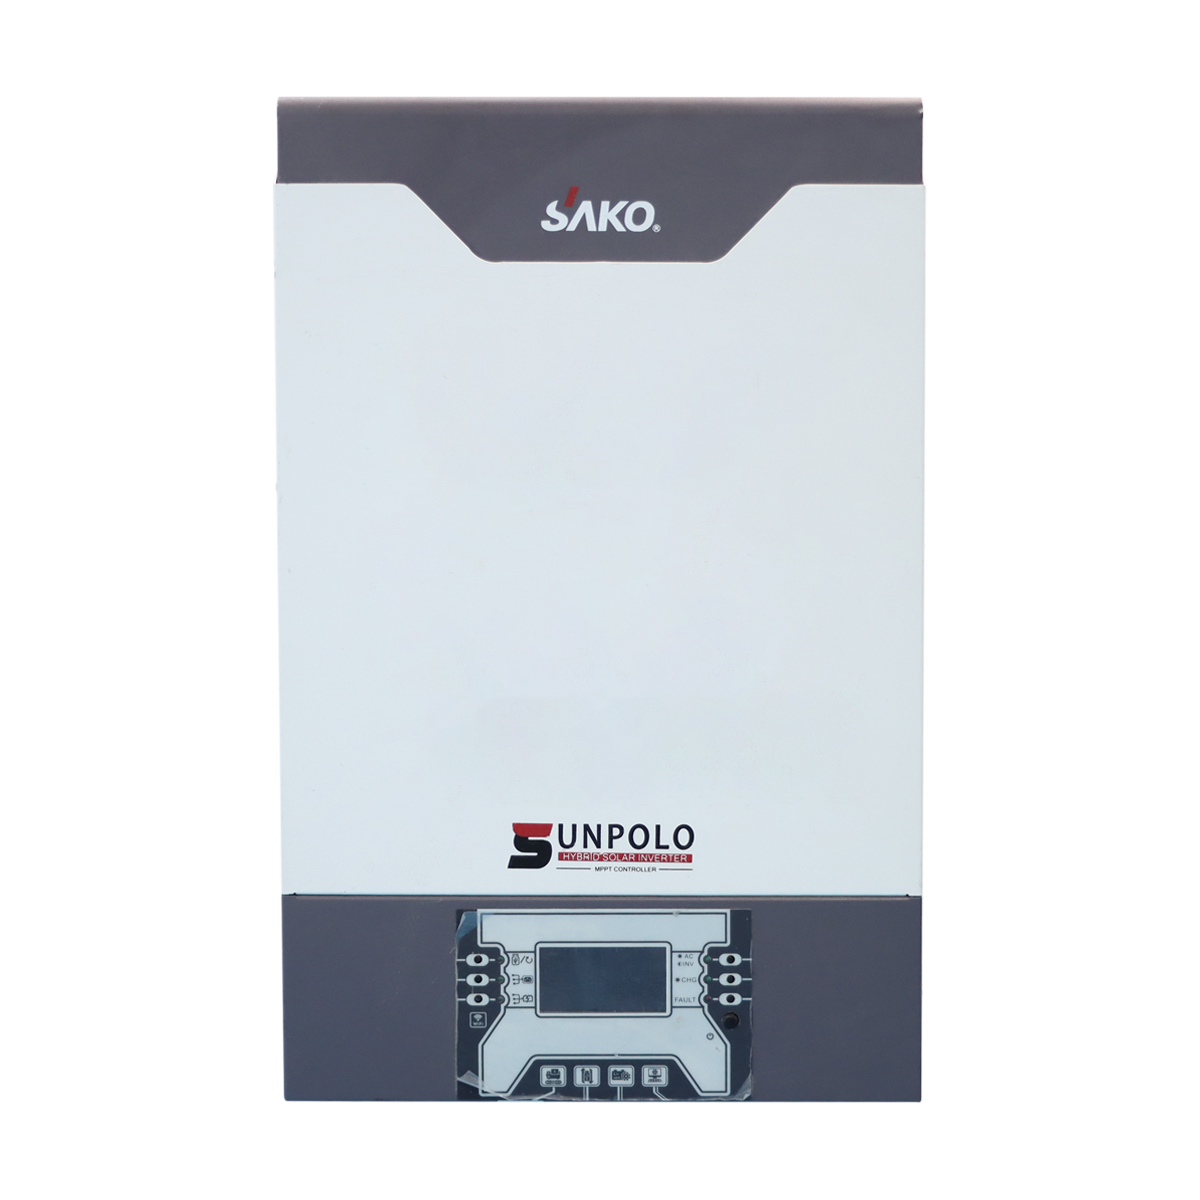 Preis Hybrid-Solar-Wechselrichter mit Mppt-Controller-System mit Hybrid-Wechselrichter All-in-One-System-Wechselrichter 5 kW